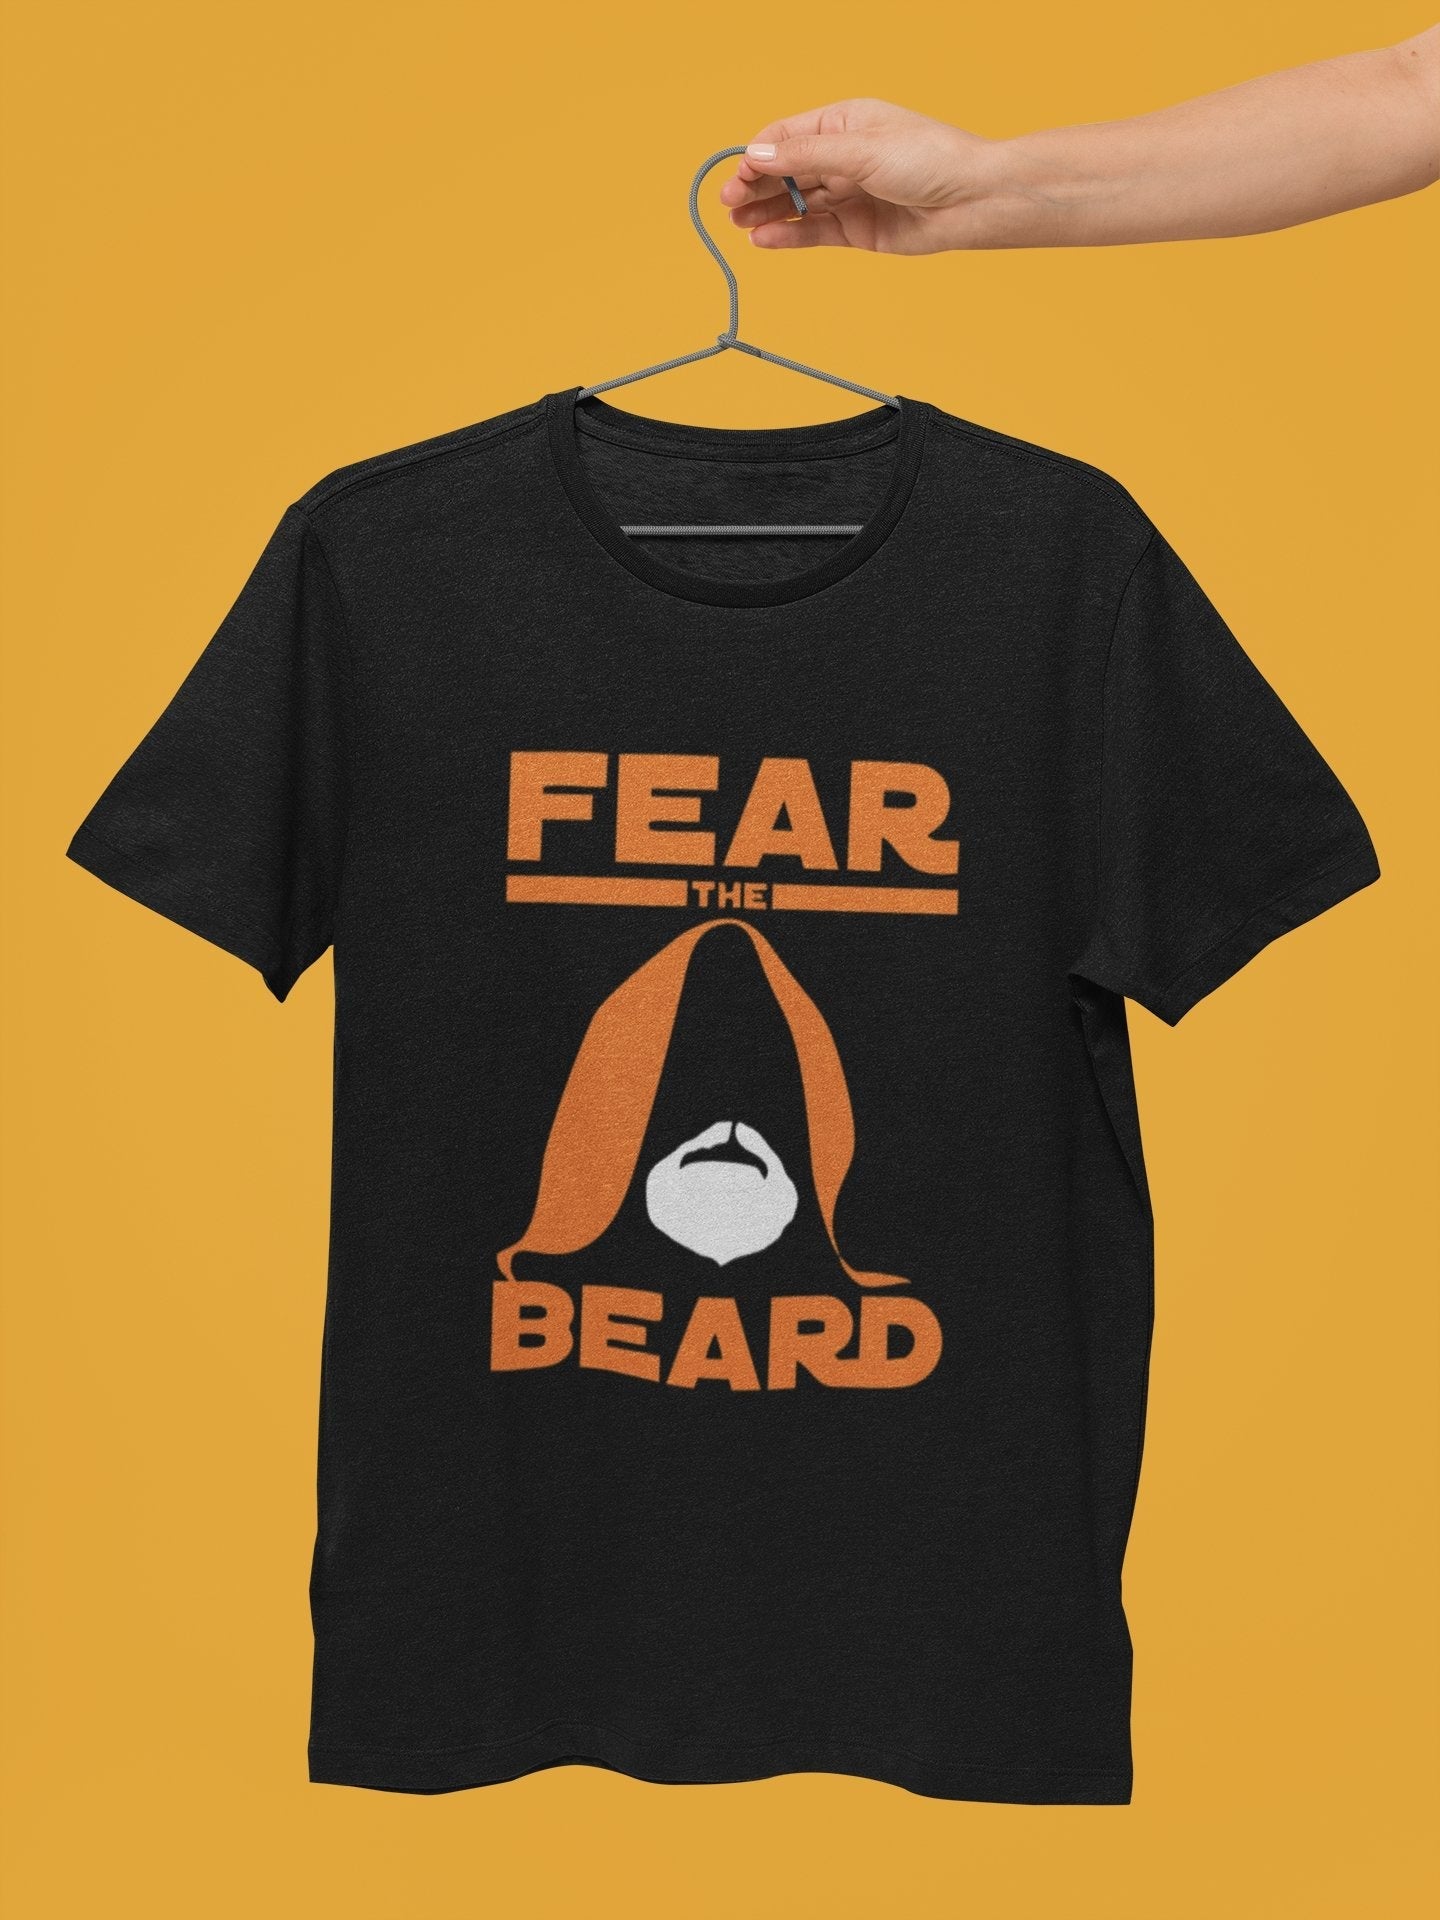 thelegalgang,Star Wars Fear The Beard T Shirt for Bearded Men,MEN.